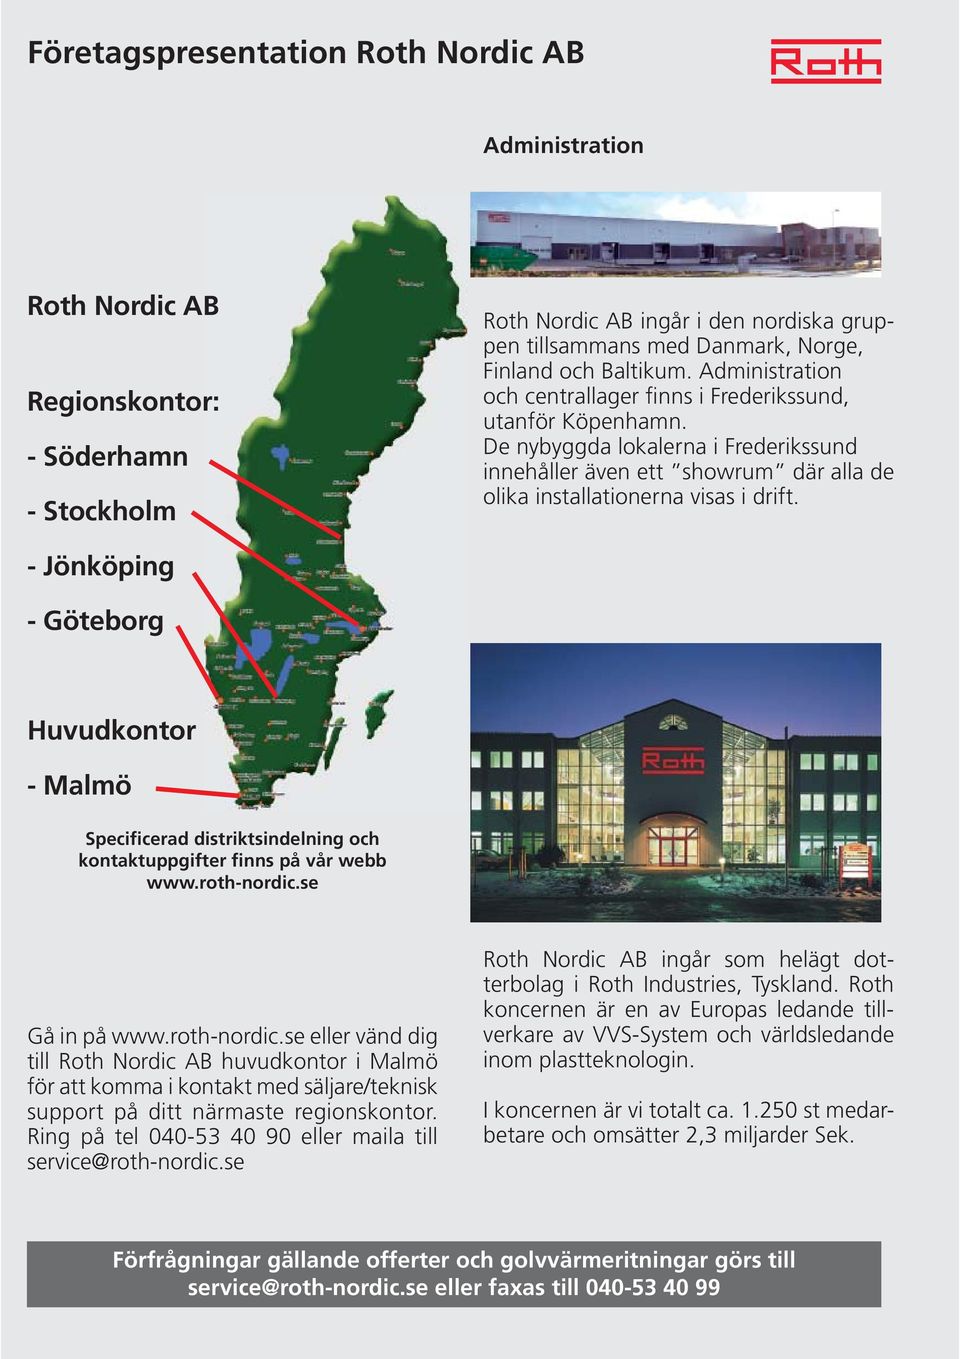 - Jönköping - Göteborg Huvudkontor - Malmö Specificerad distriktsindelning och kontaktuppgifter finns på vår webb www.roth-nordic.